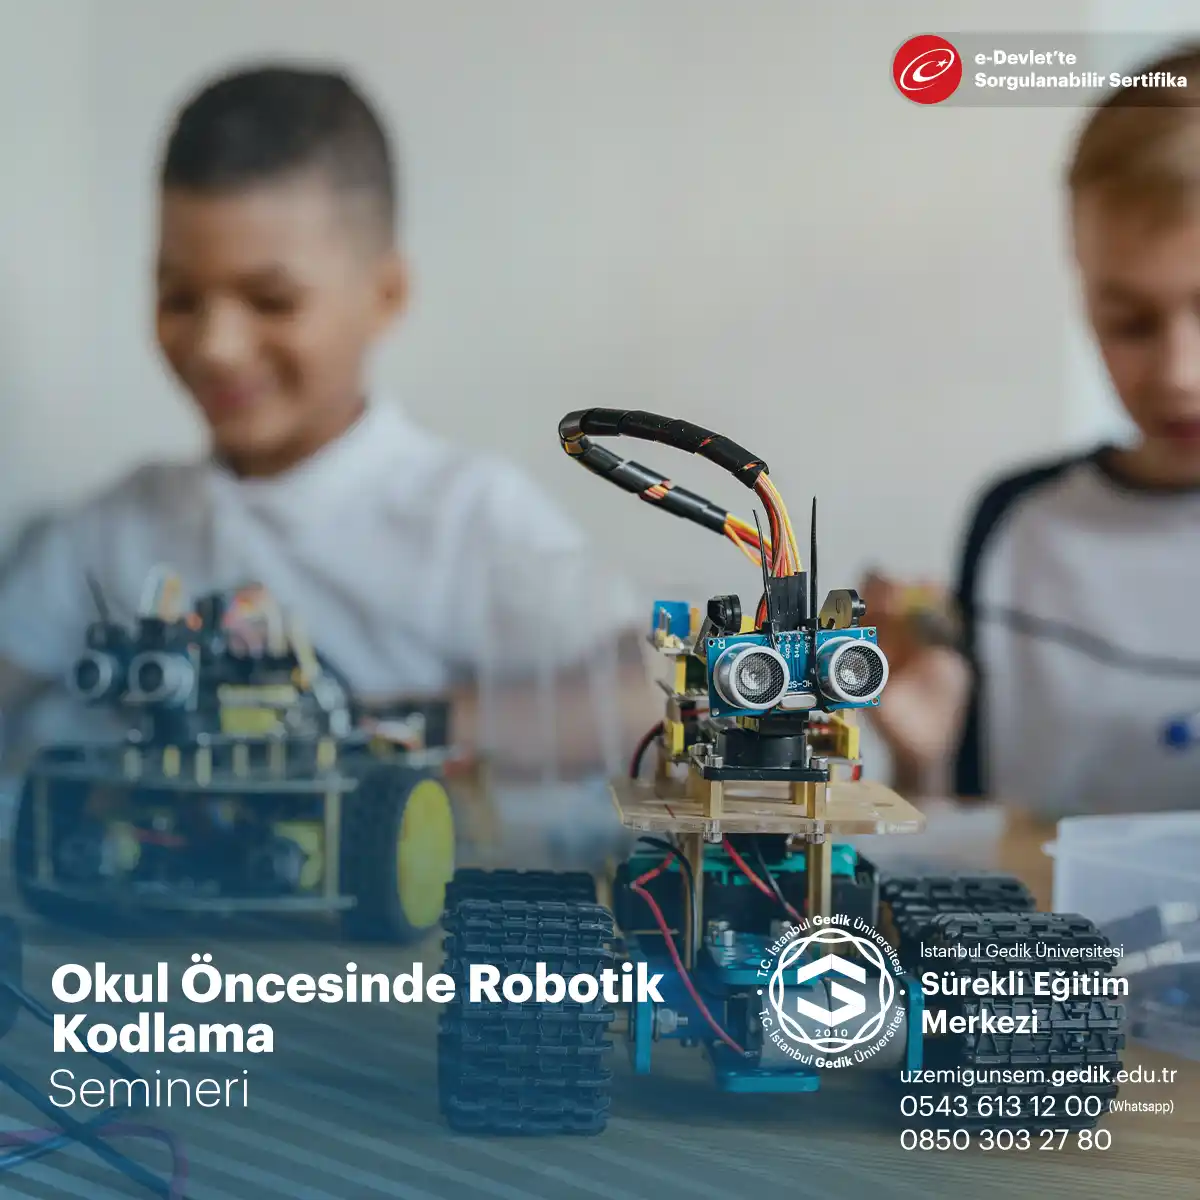 Okul öncesinde robotik kodlama, çocukların erken yaşta teknolojiyle tanışmalarını ve STEM becerilerini geliştirmelerini sağlayan bir yaklaşımdır.